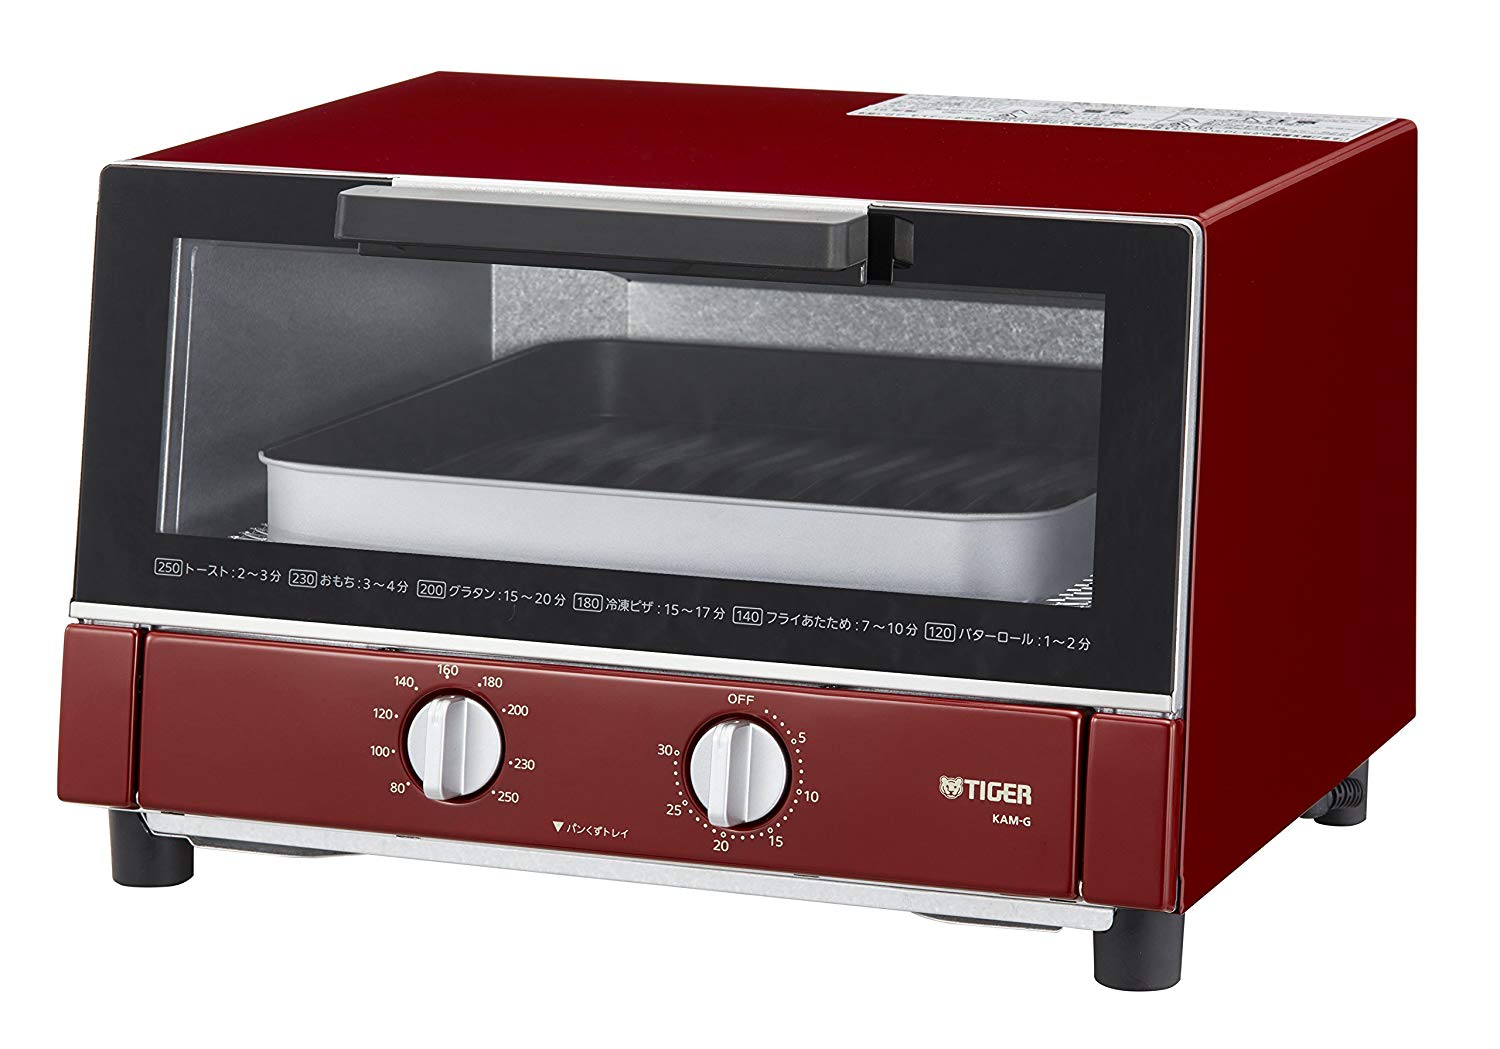 Fakir Rubra Toaster, 980 W, Plastic, Red - AliExpress